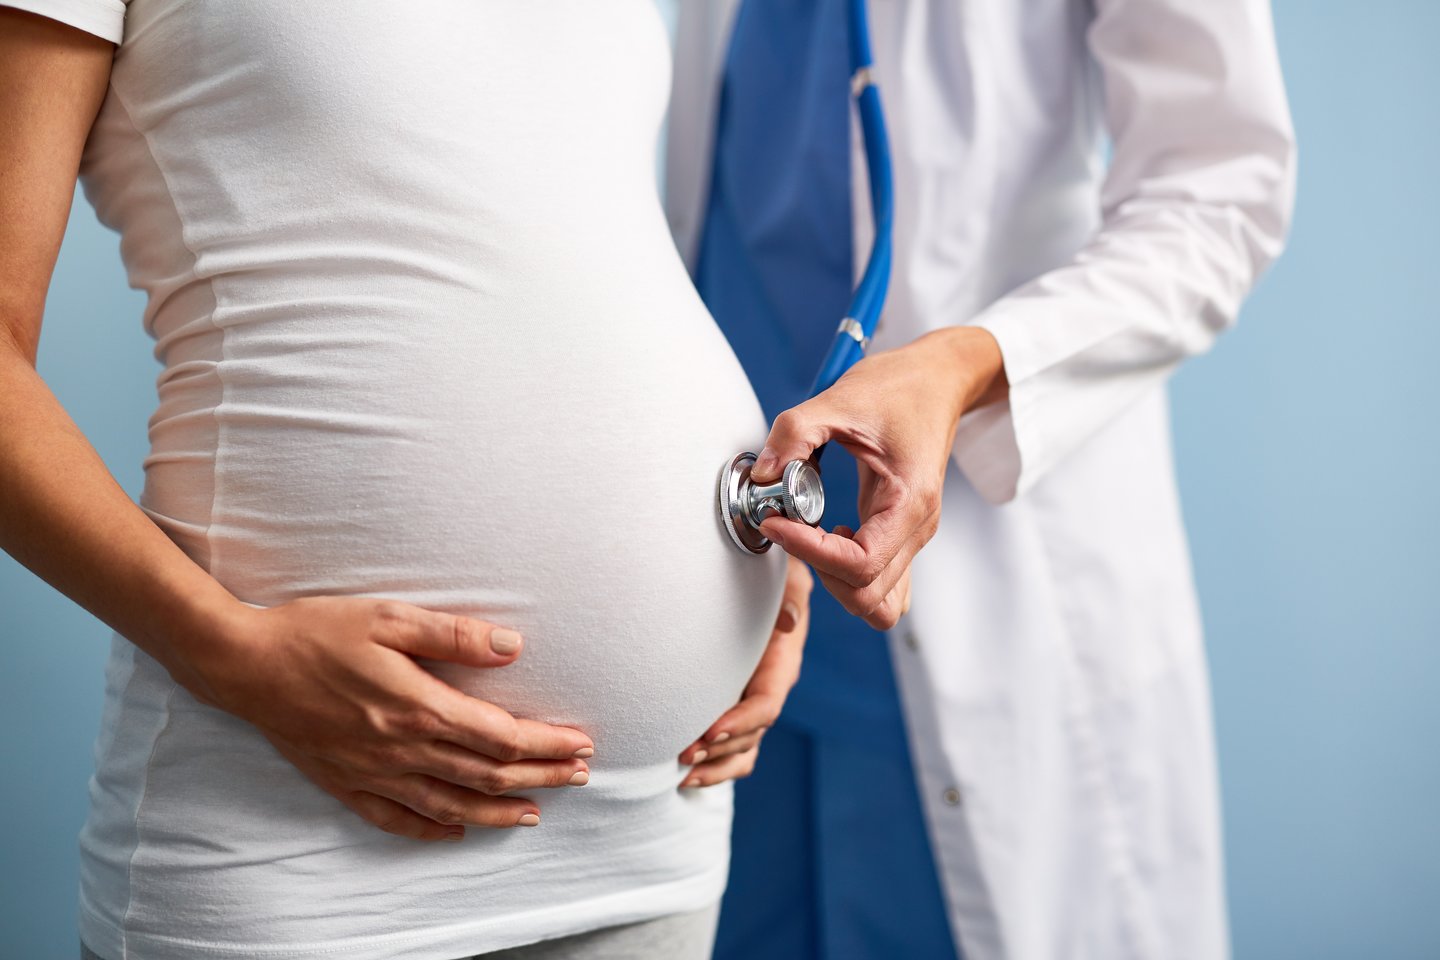 Moters kūnas atlieka nuostabų ir itin atsakingą darbą, visgi organizmas laukiantis 20-ties ir 40-ties į nėštumą gali reaguoti labai skirtingai, be to, gali padidėti komplikacijų rizika.<br>123rf nuotr.